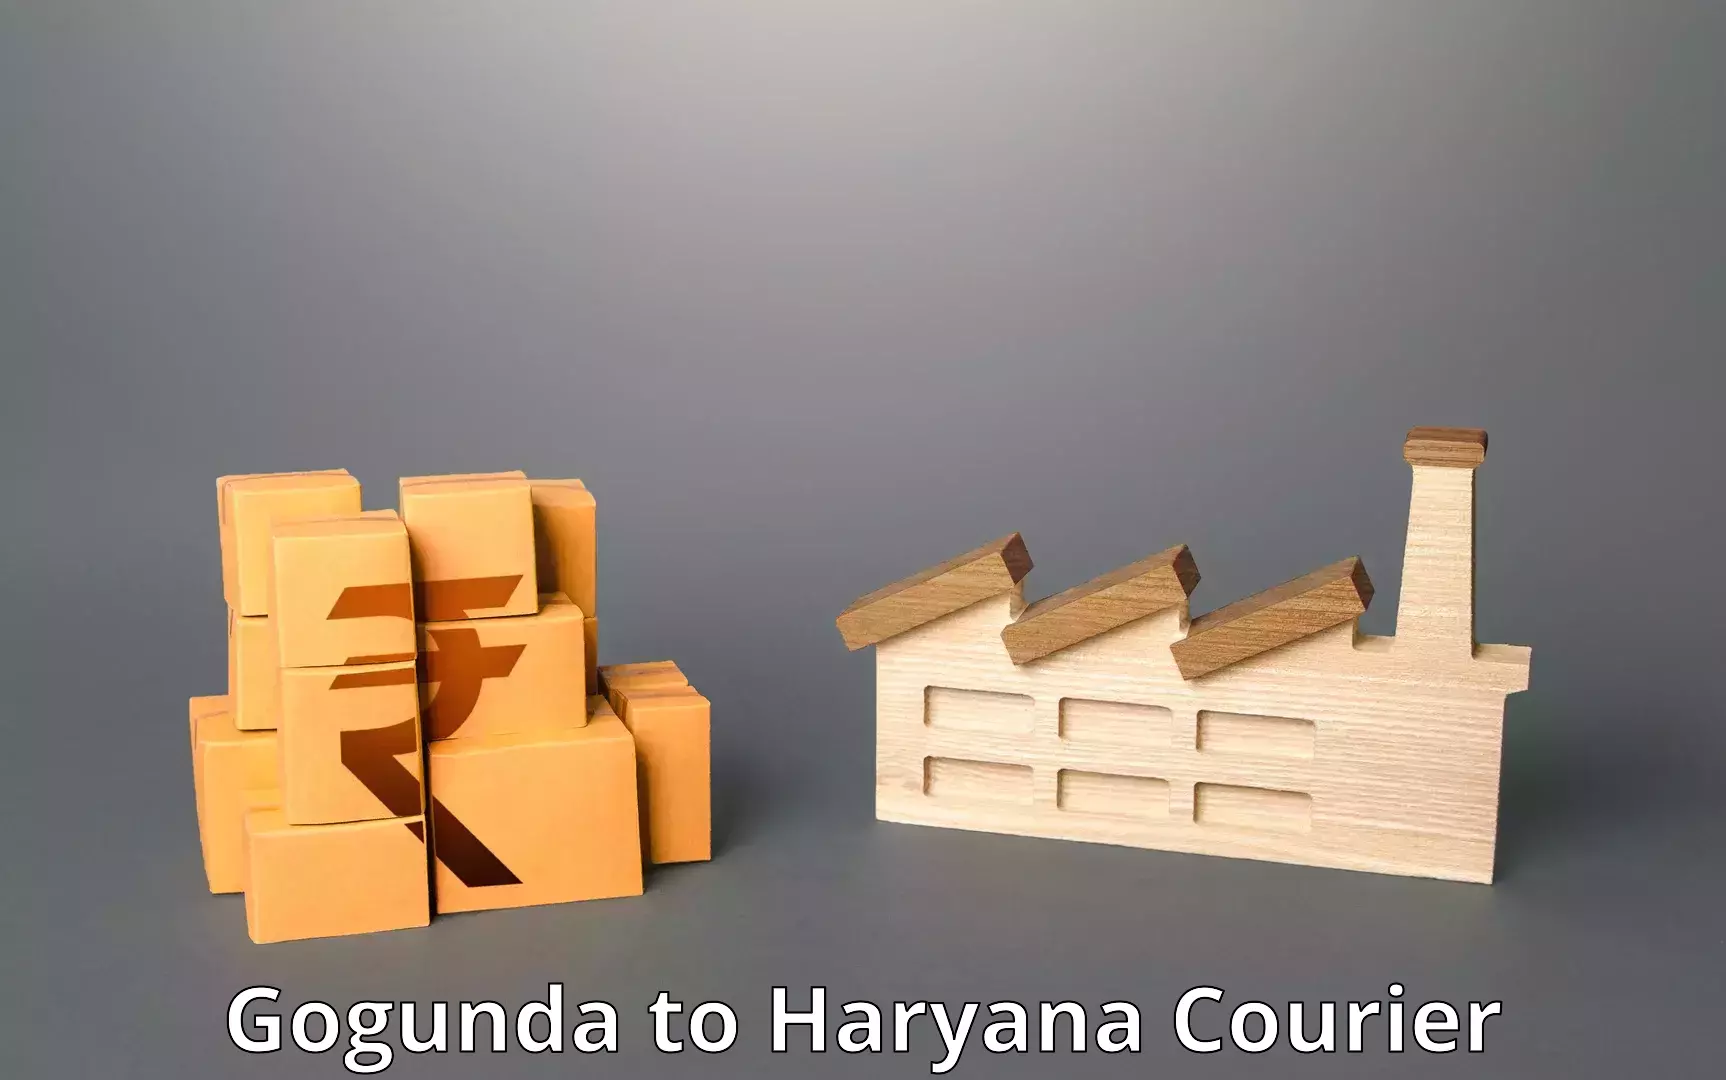 Discounted shipping Gogunda to Panipat